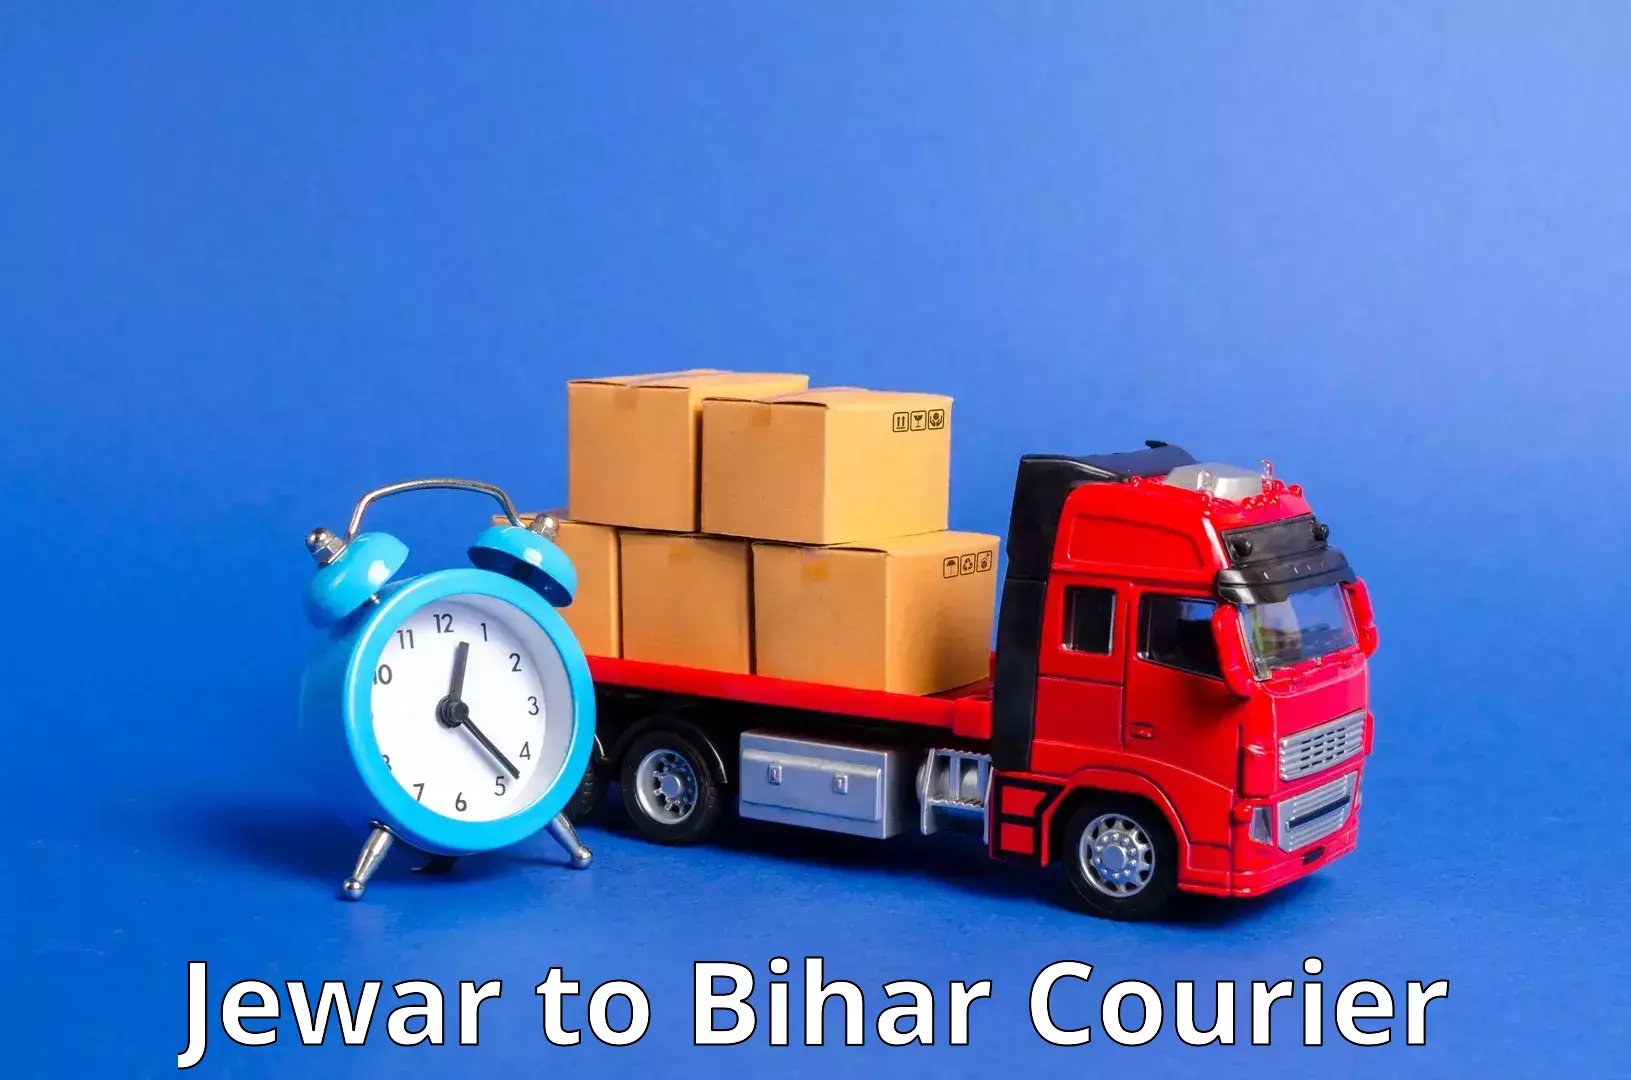 24/7 courier service Jewar to Bihta